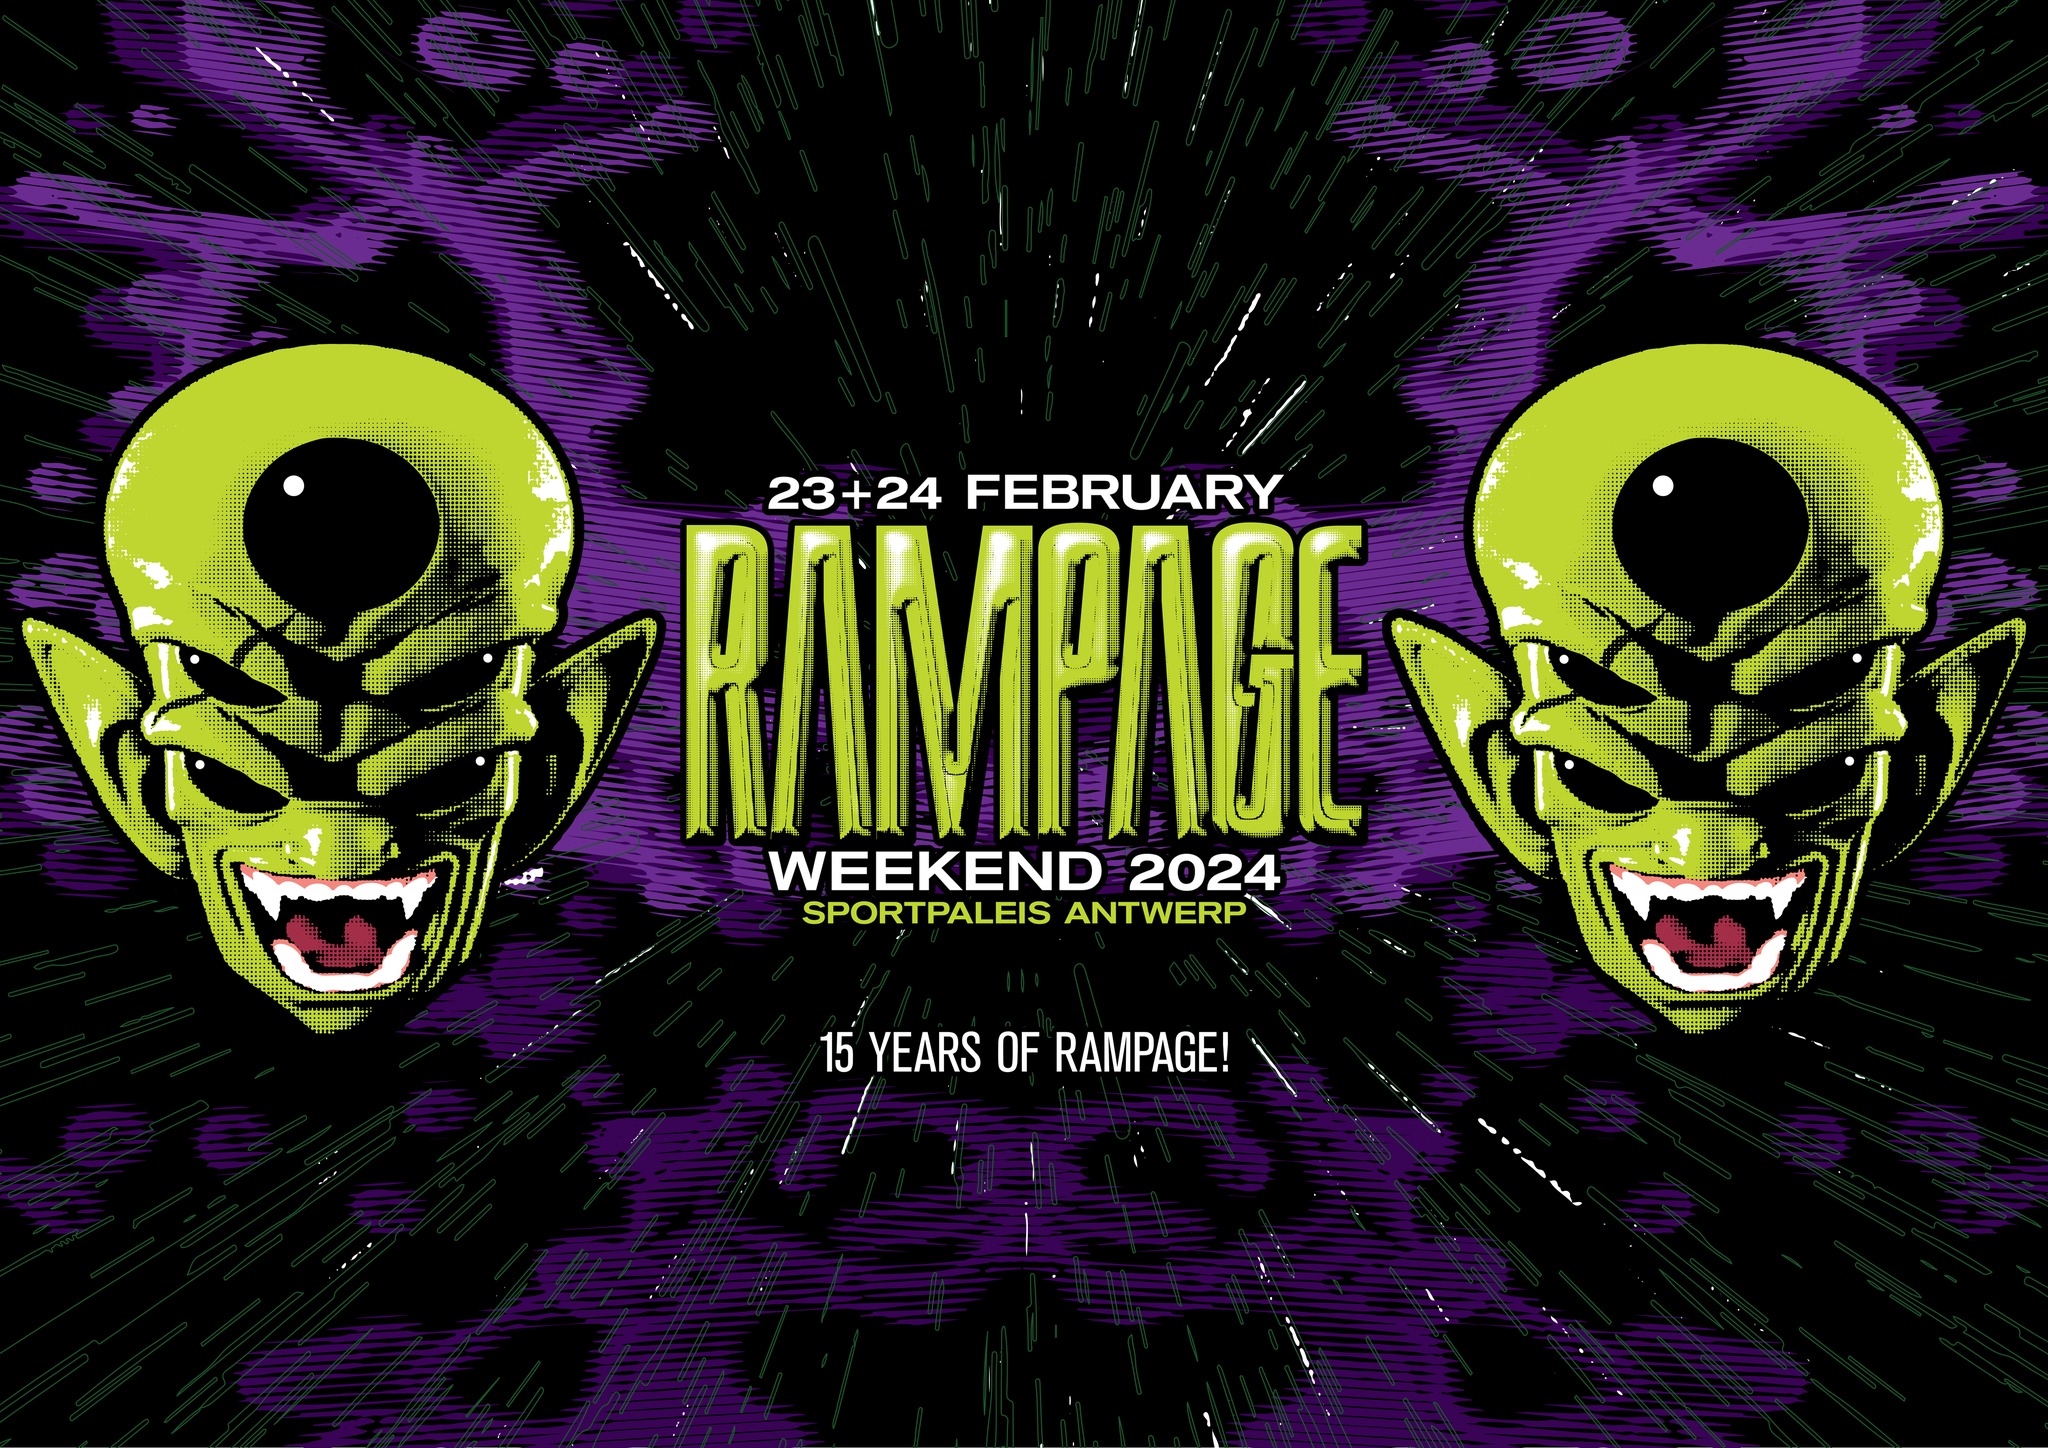 Rampage weekend 2024